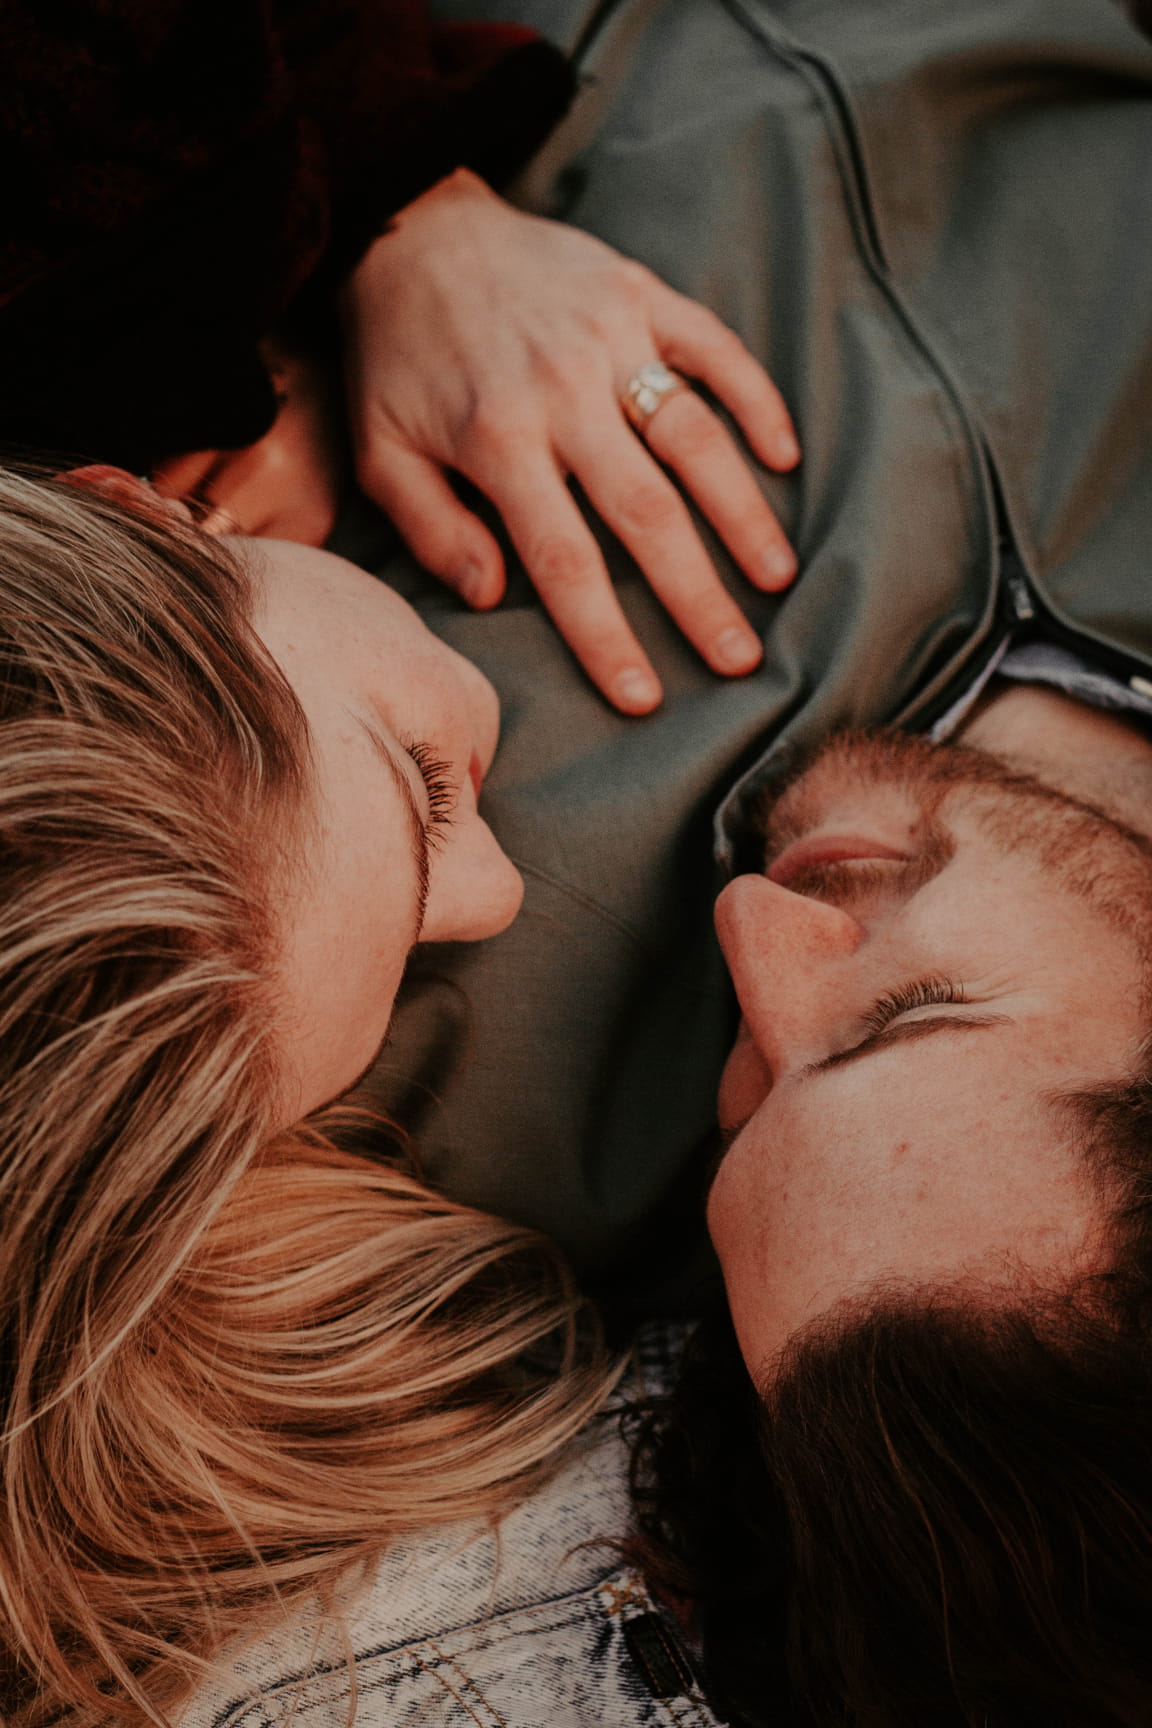 15 bedeutende Fragen für Paare: So stärkt ihr eure Liebe und Beziehung